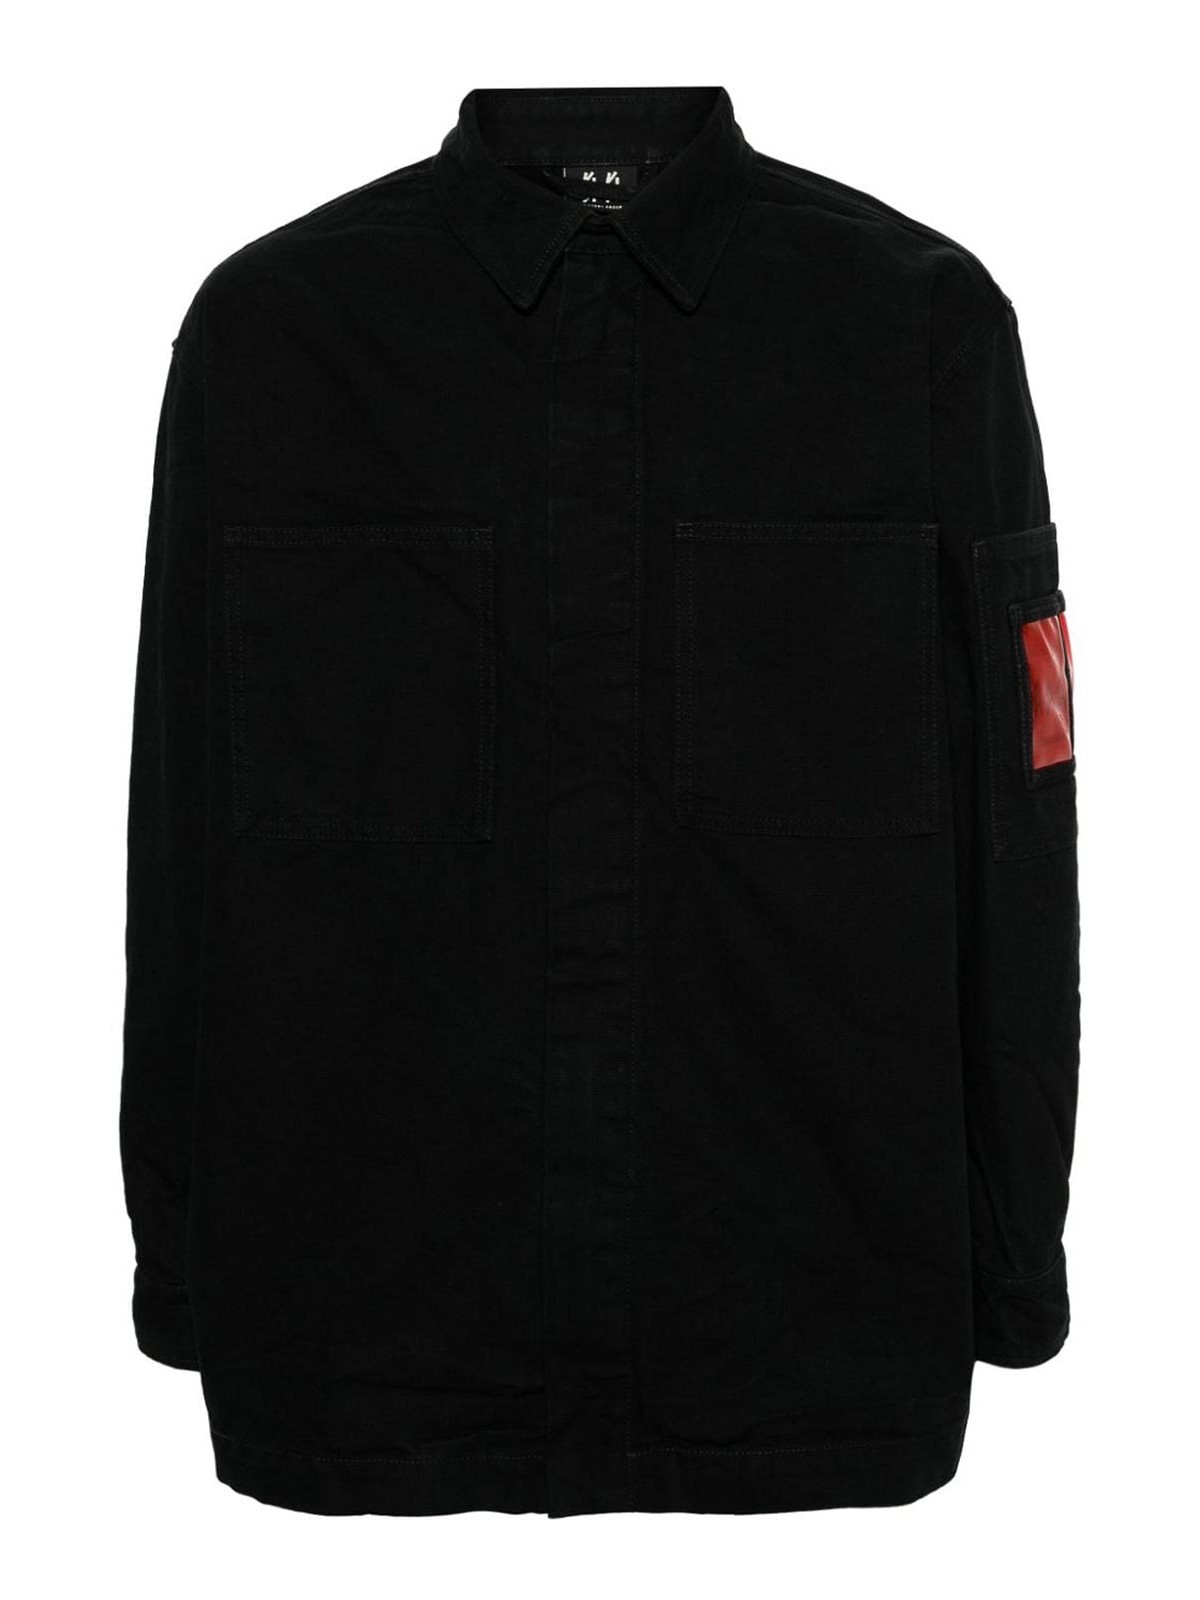 Shop 44 Label Group Coat In Black